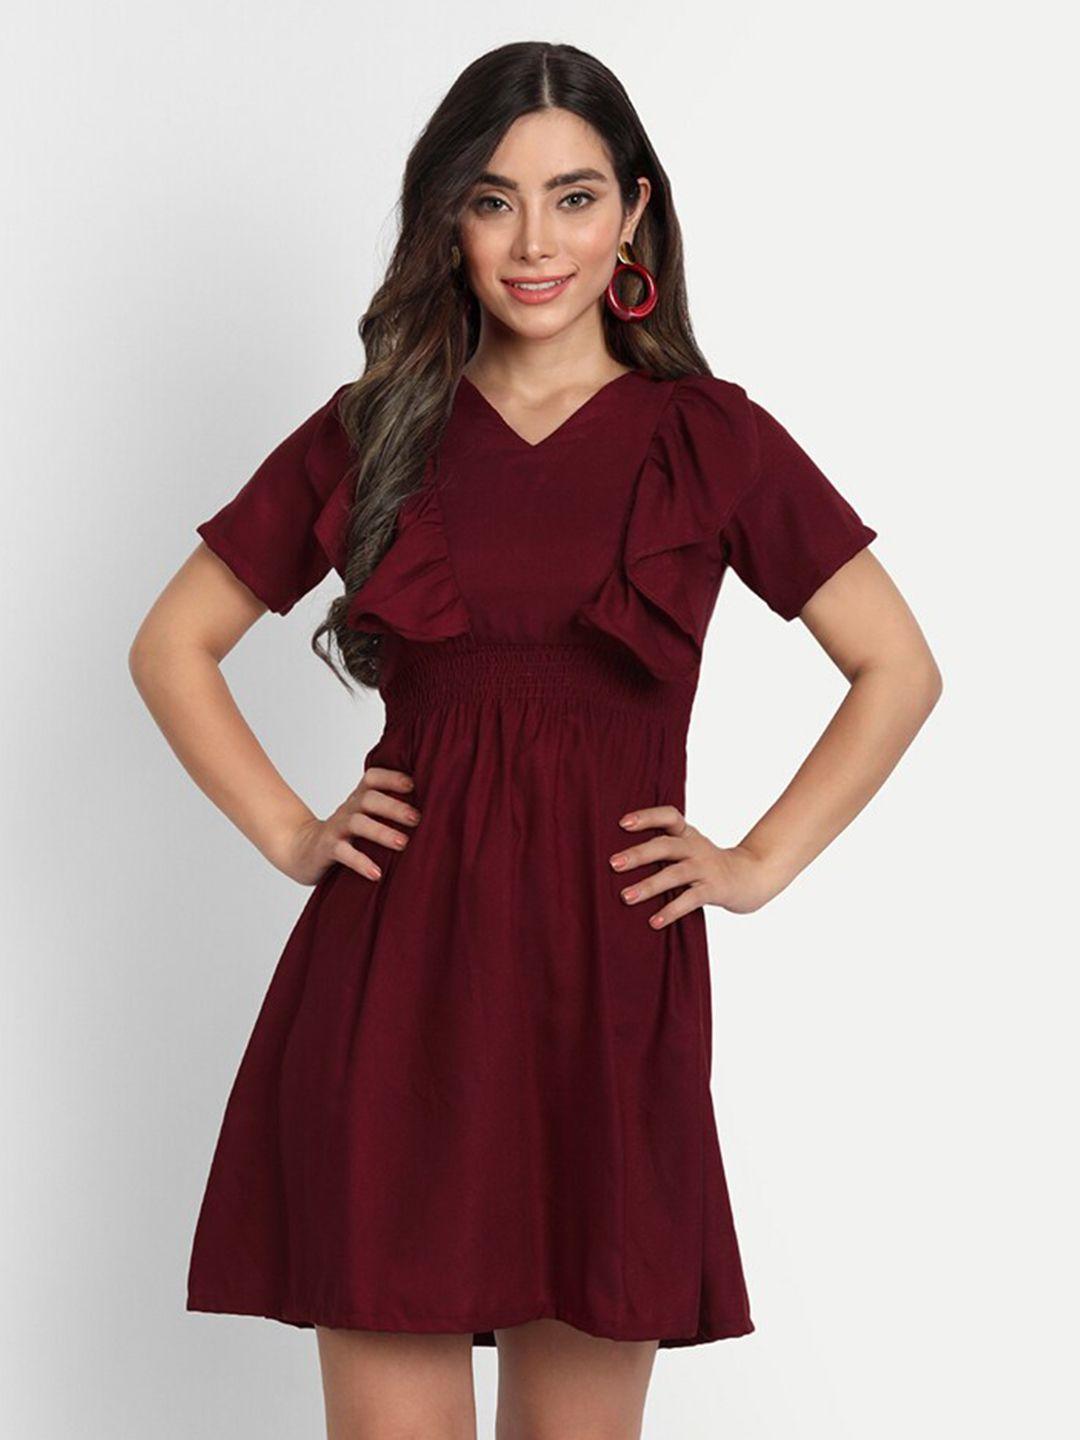 gufrina maroon a-line mini dress